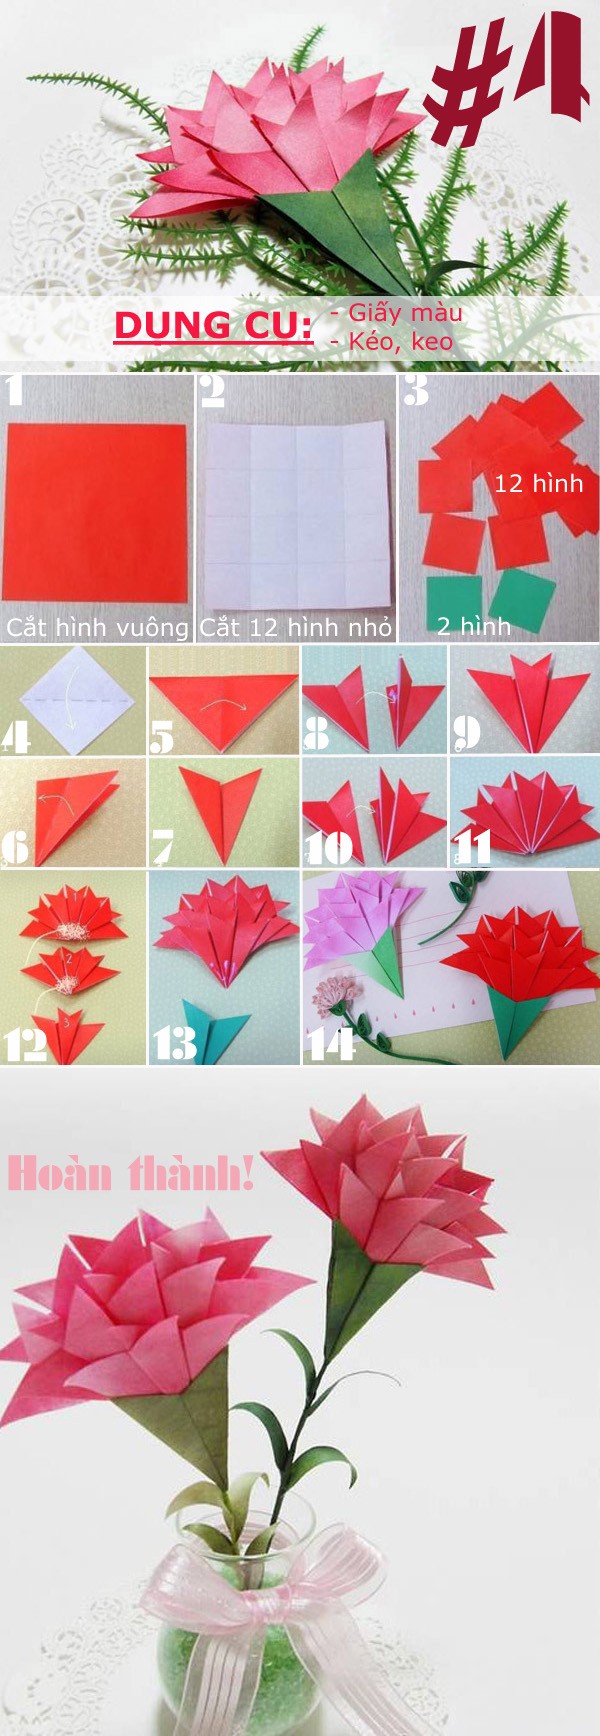 Giới thiệu 4 kiểu hoa giấy đẹp dùng trong trang trí có cách gấp đơn giản 4